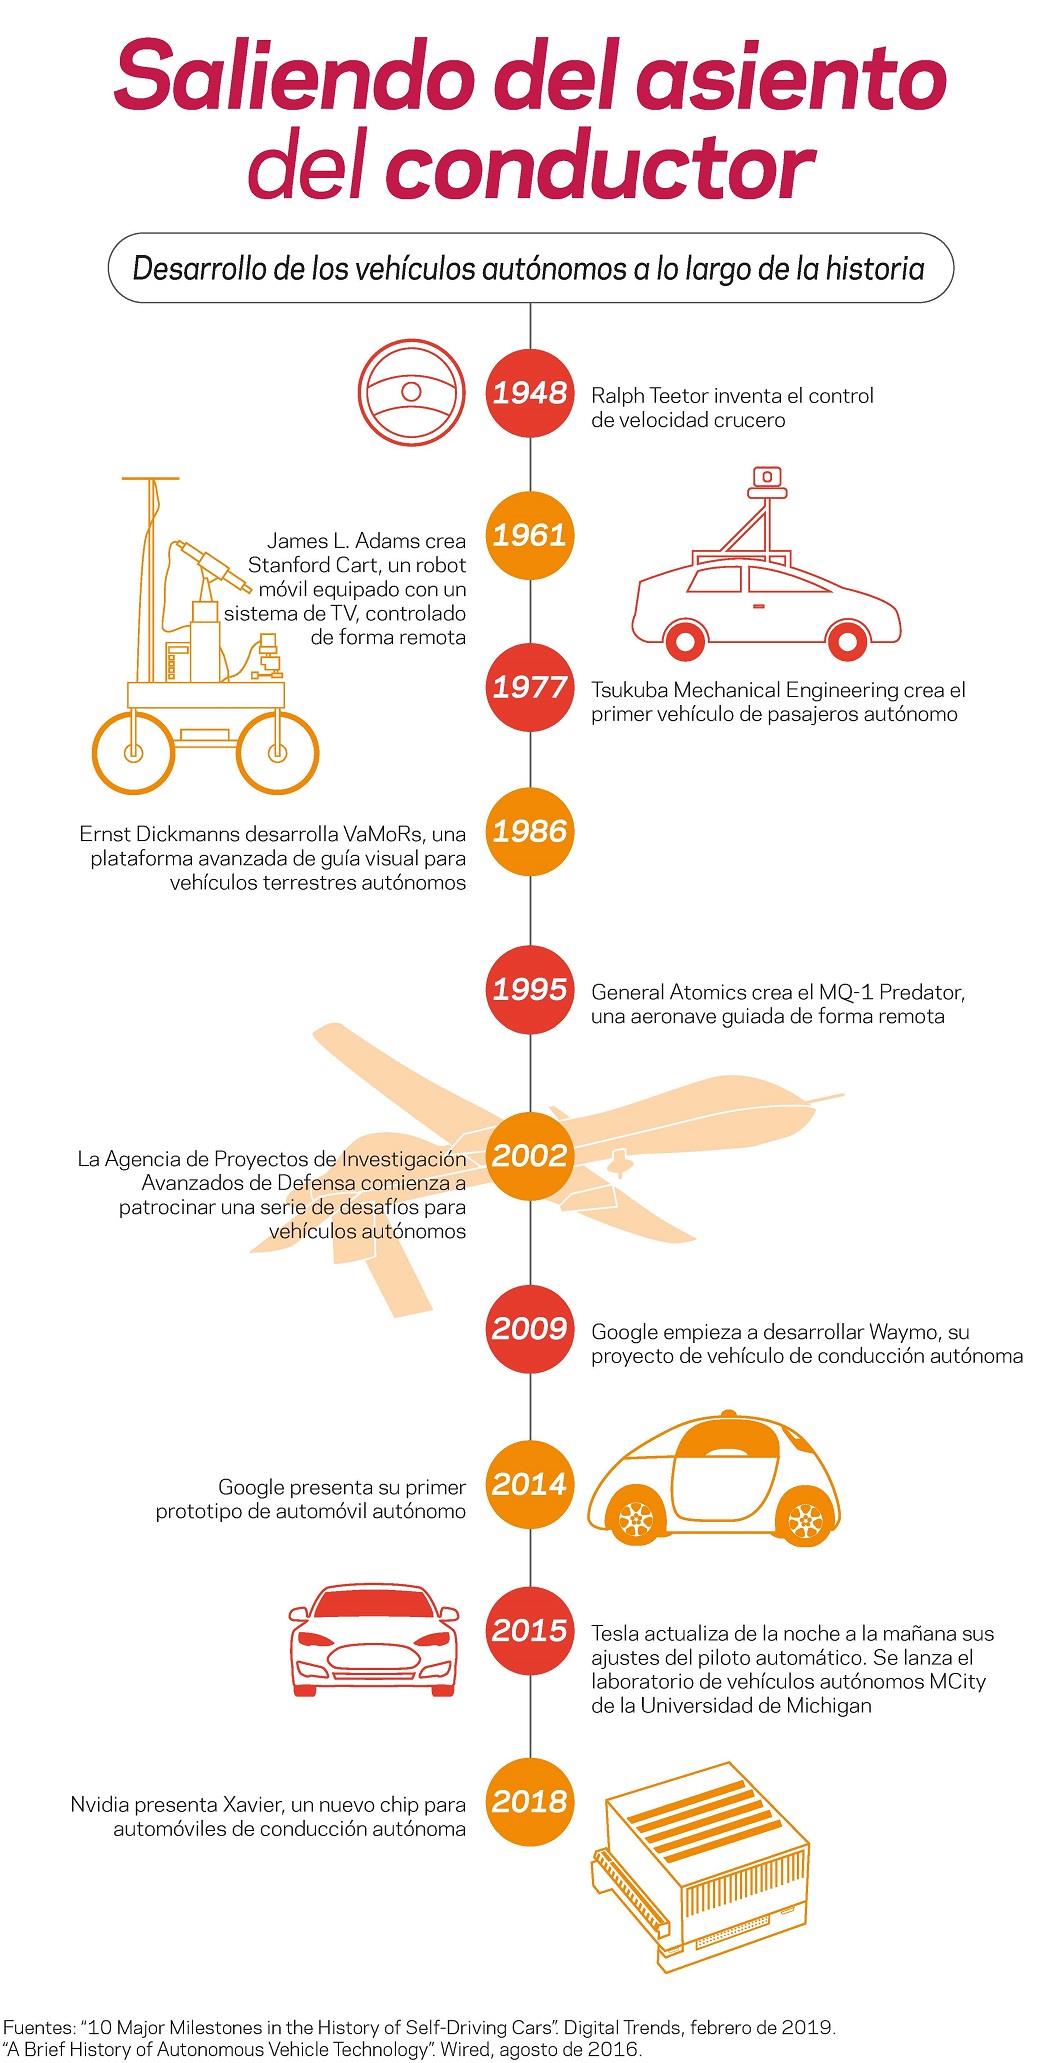  Una infografía explica el desarrollo de vehículos autónomos a lo largo de la historia.